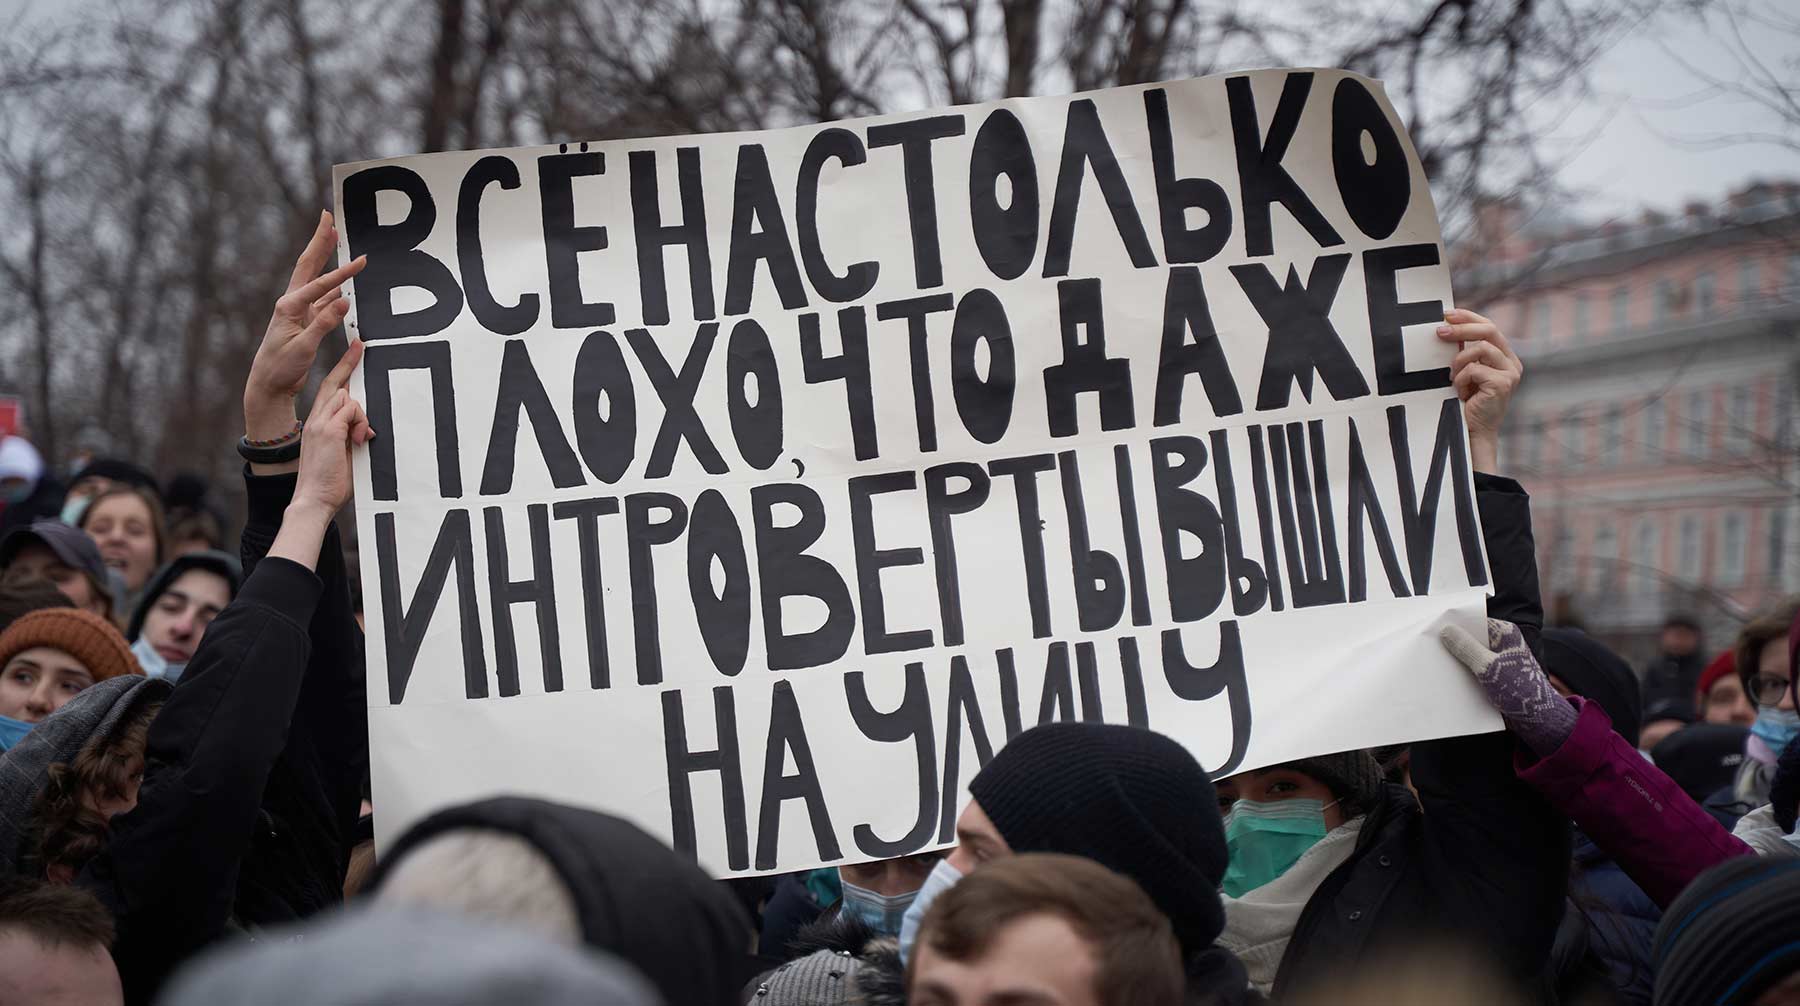 Сенаторы утверждают, что на интернет-платформах граждан склоняют к массовым беспорядкам Фото: © Daily Storm / Алексей Ларкин